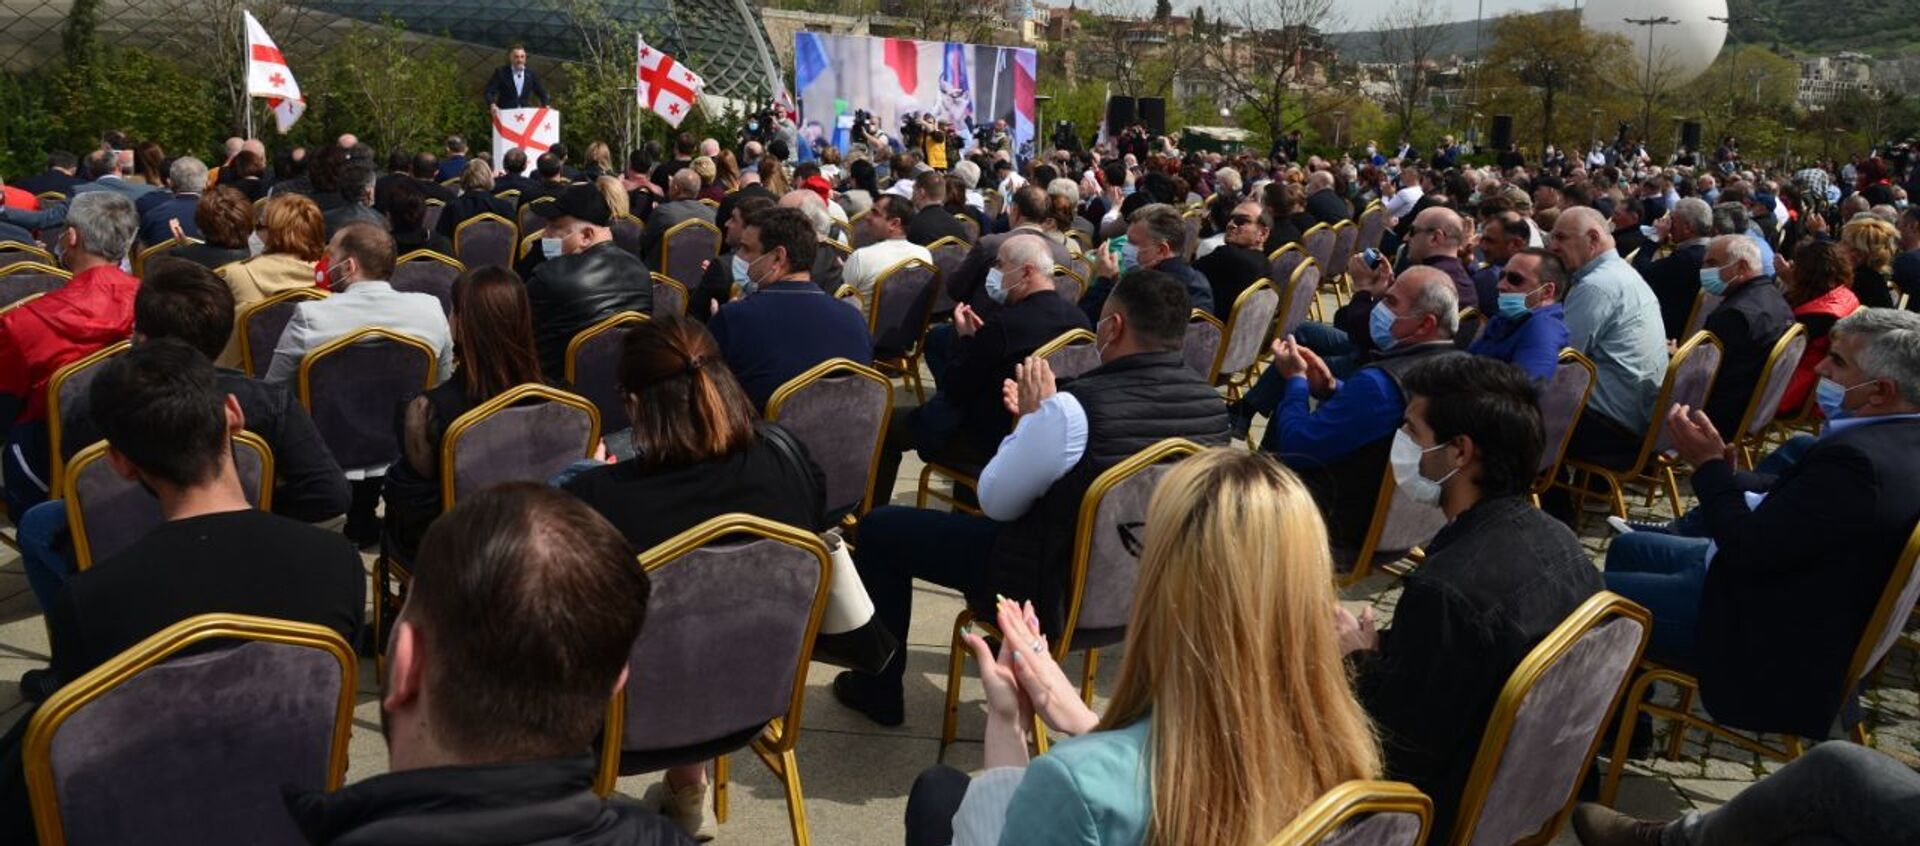 Встреча лидеров объединенной оппозиции в парке Рике 19 апреля 2021 года - Sputnik Грузия, 1920, 19.04.2021